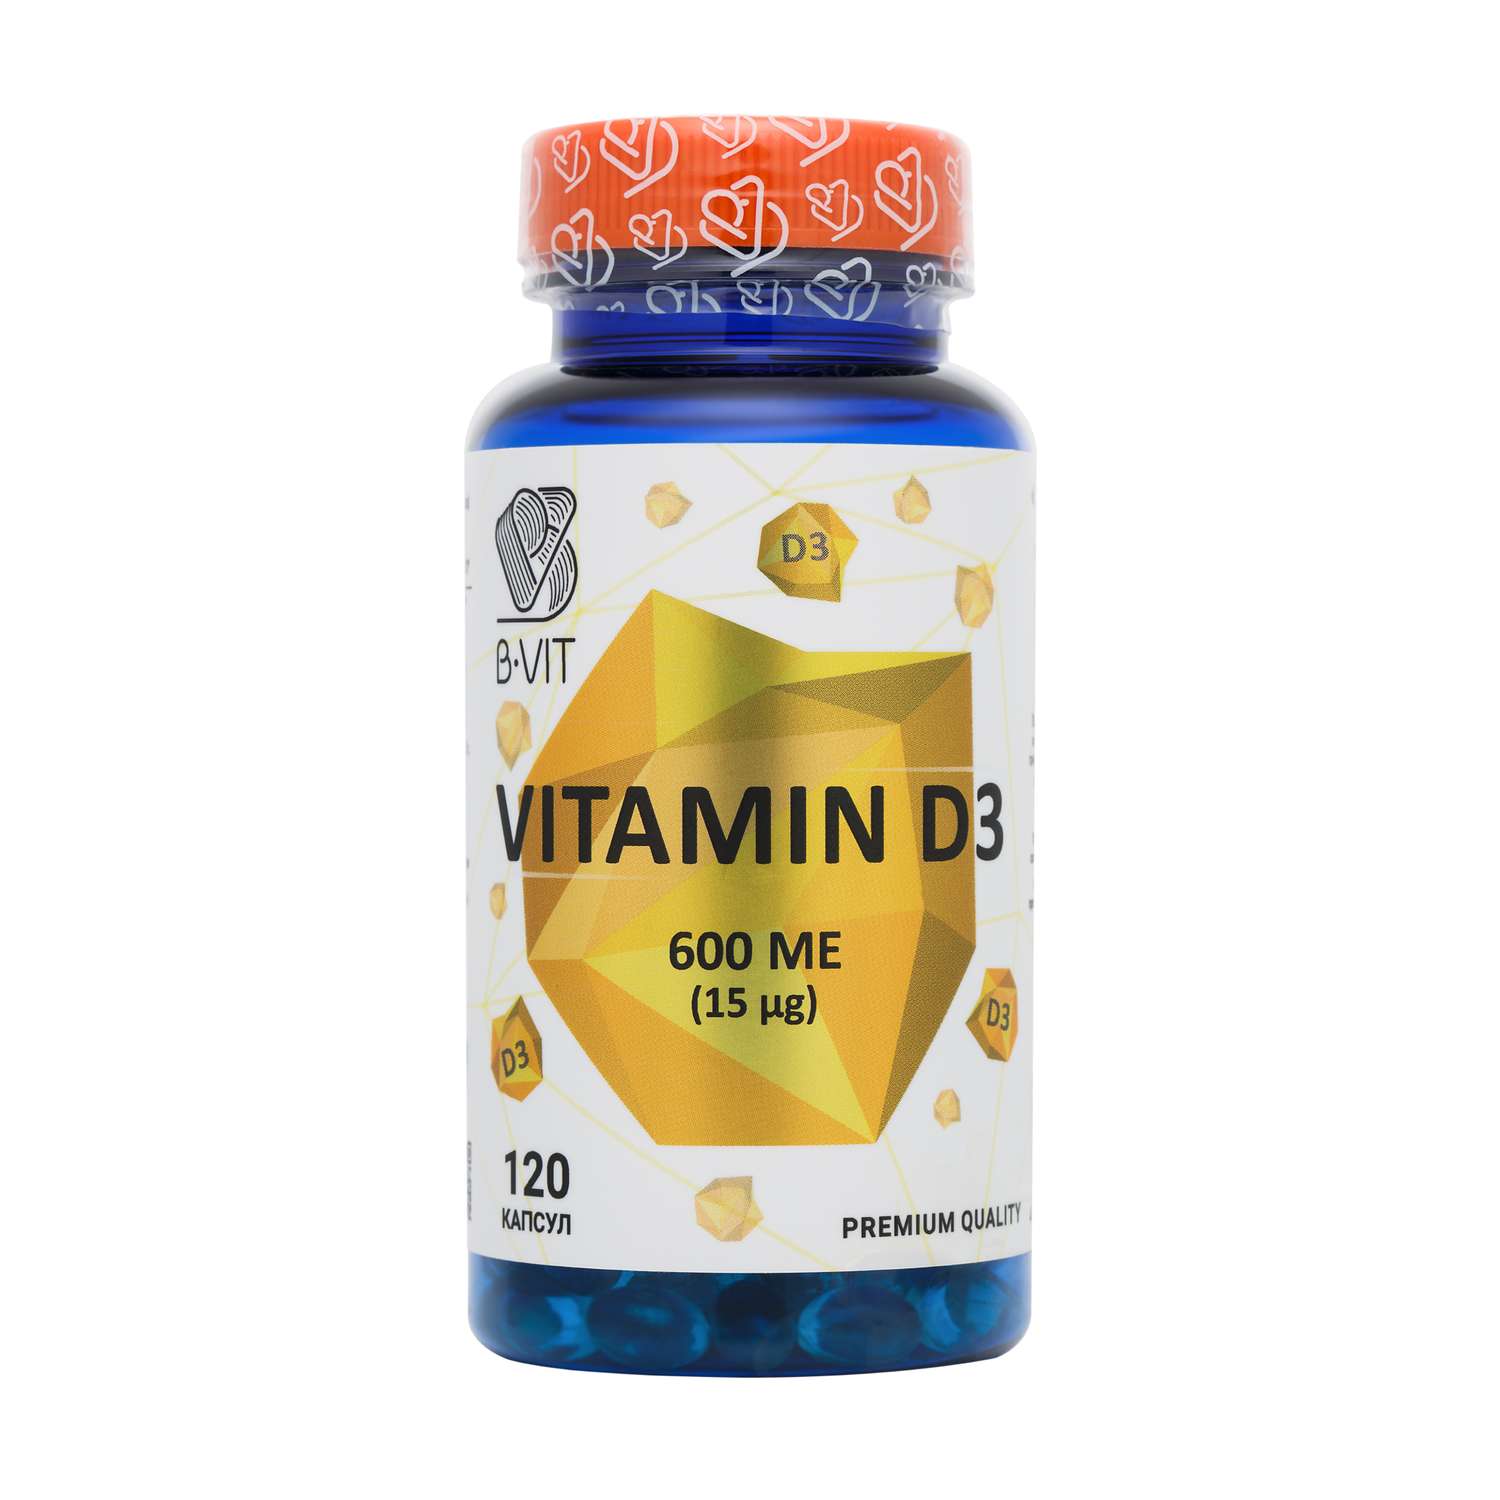 Биологически активная добавка B-VIT Витамин D 3 600 ME 120 капсул - фото 3